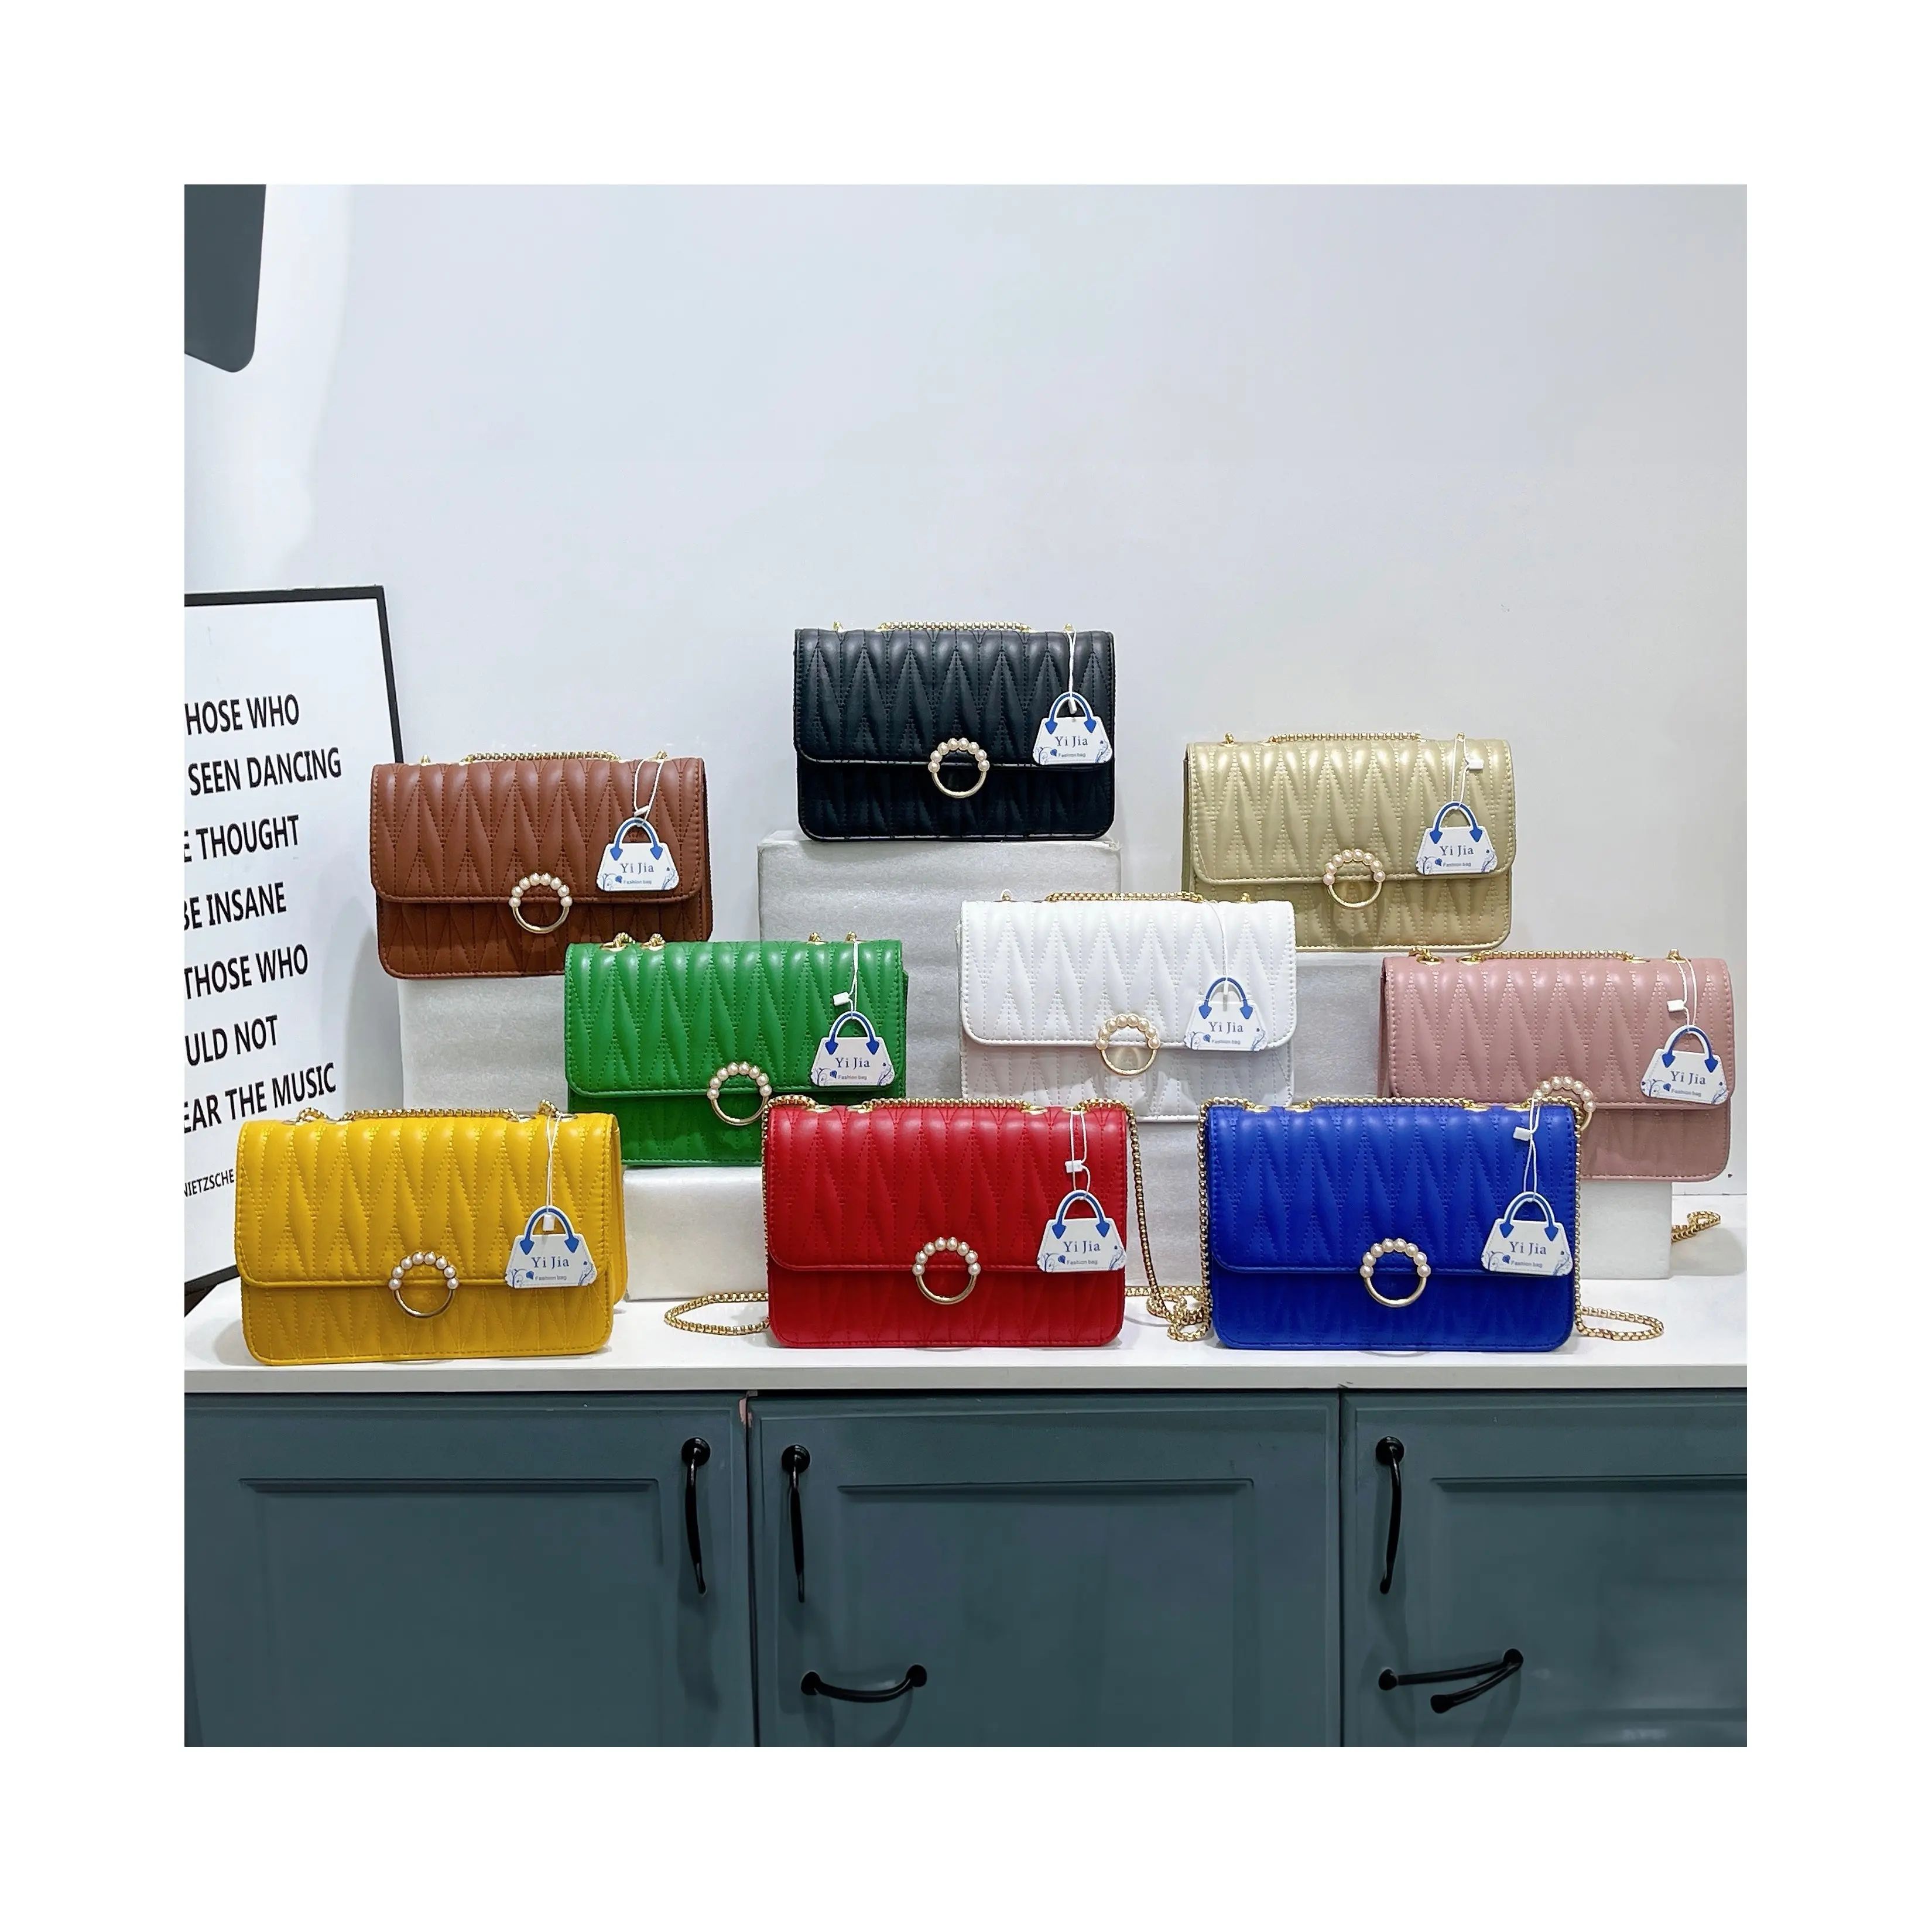 Guangzhou Wholesale Bag Barato Mulheres Embreagens Bolsas Designer de Luxo Sacolas para Senhoras Sac A Main Femm Sac